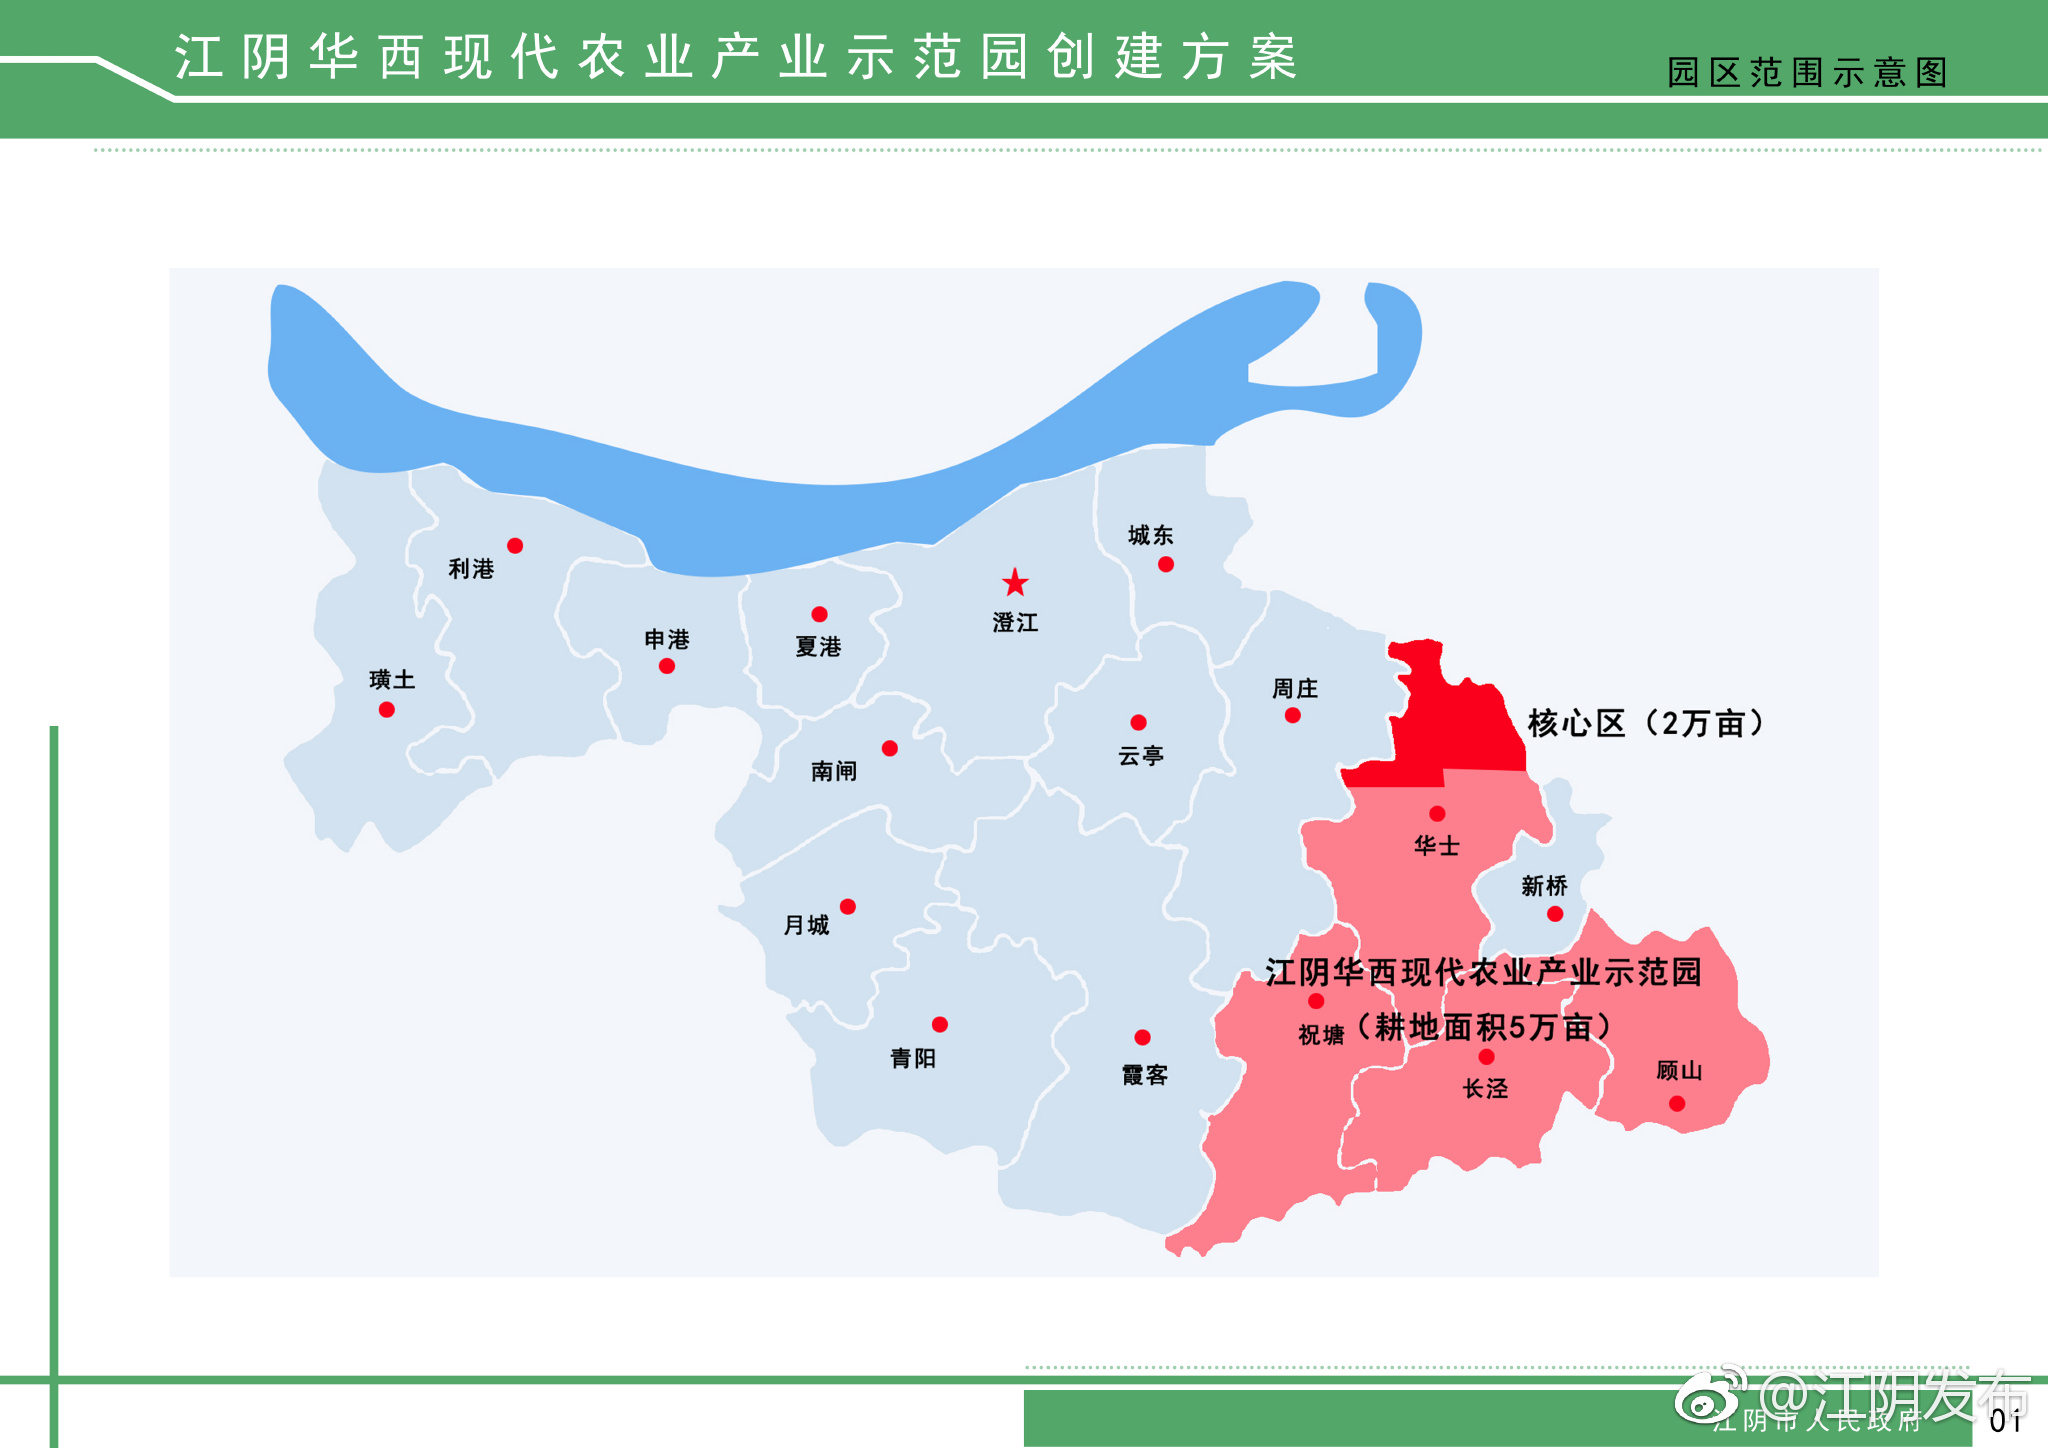 江阴市镇区分布图图片